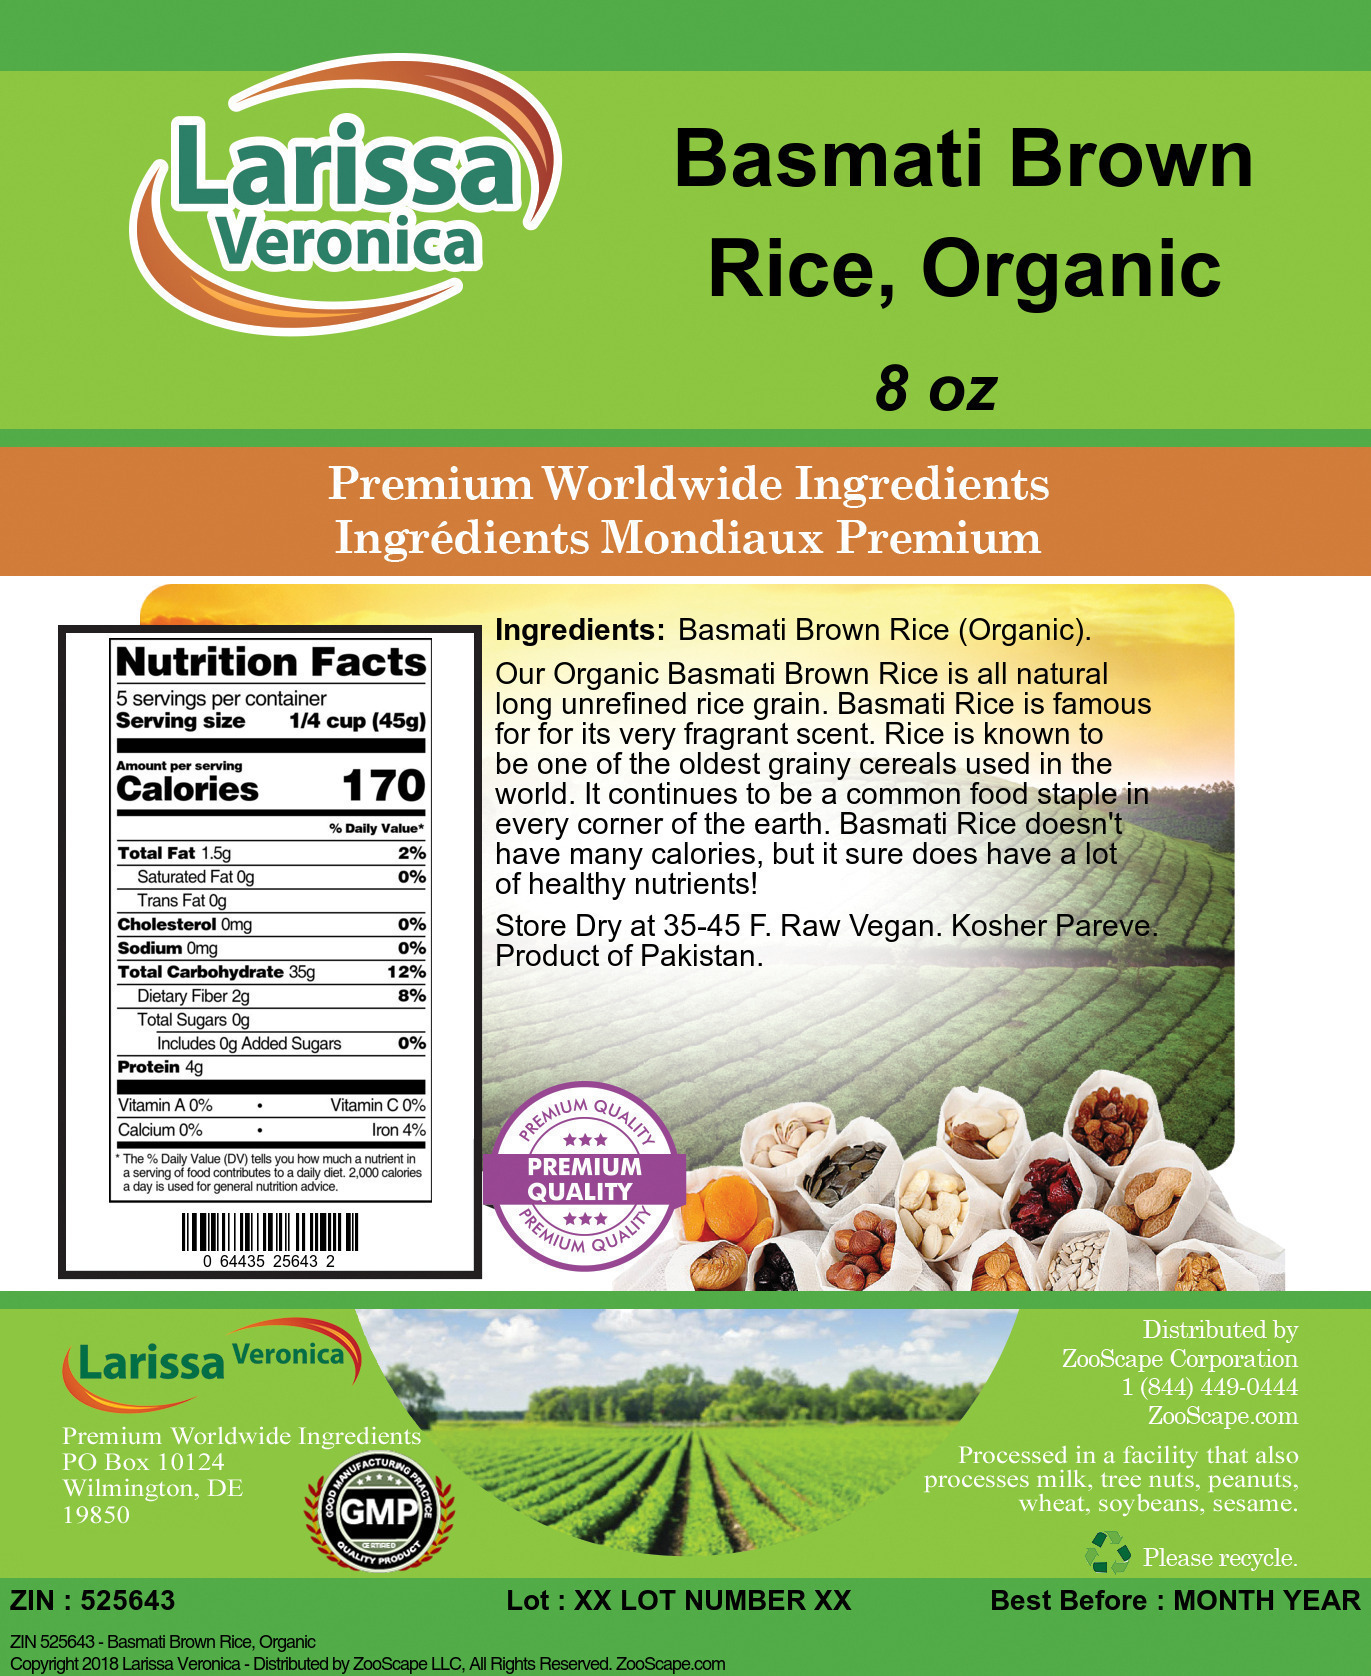 Basmati Brown Rice, Organic - Label